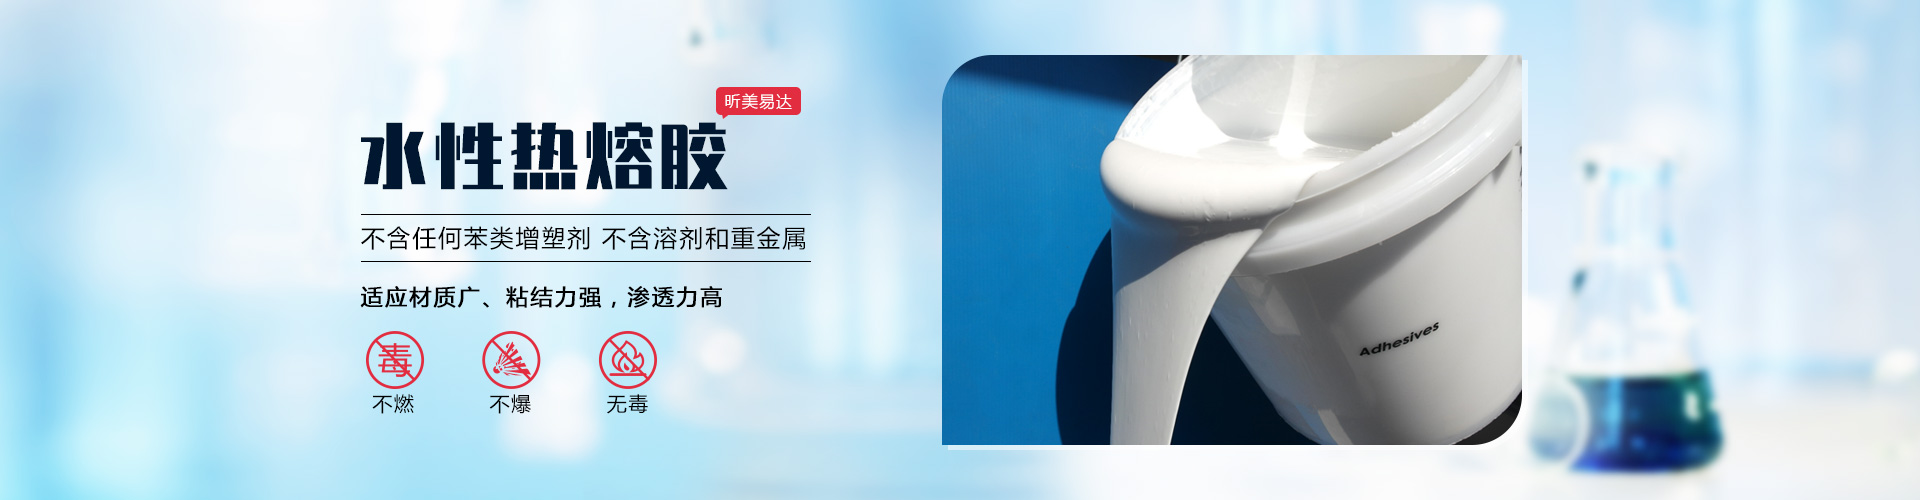 青島昕美易達專業生產水性熱熔膠,聚氨酯膠等系列產品.